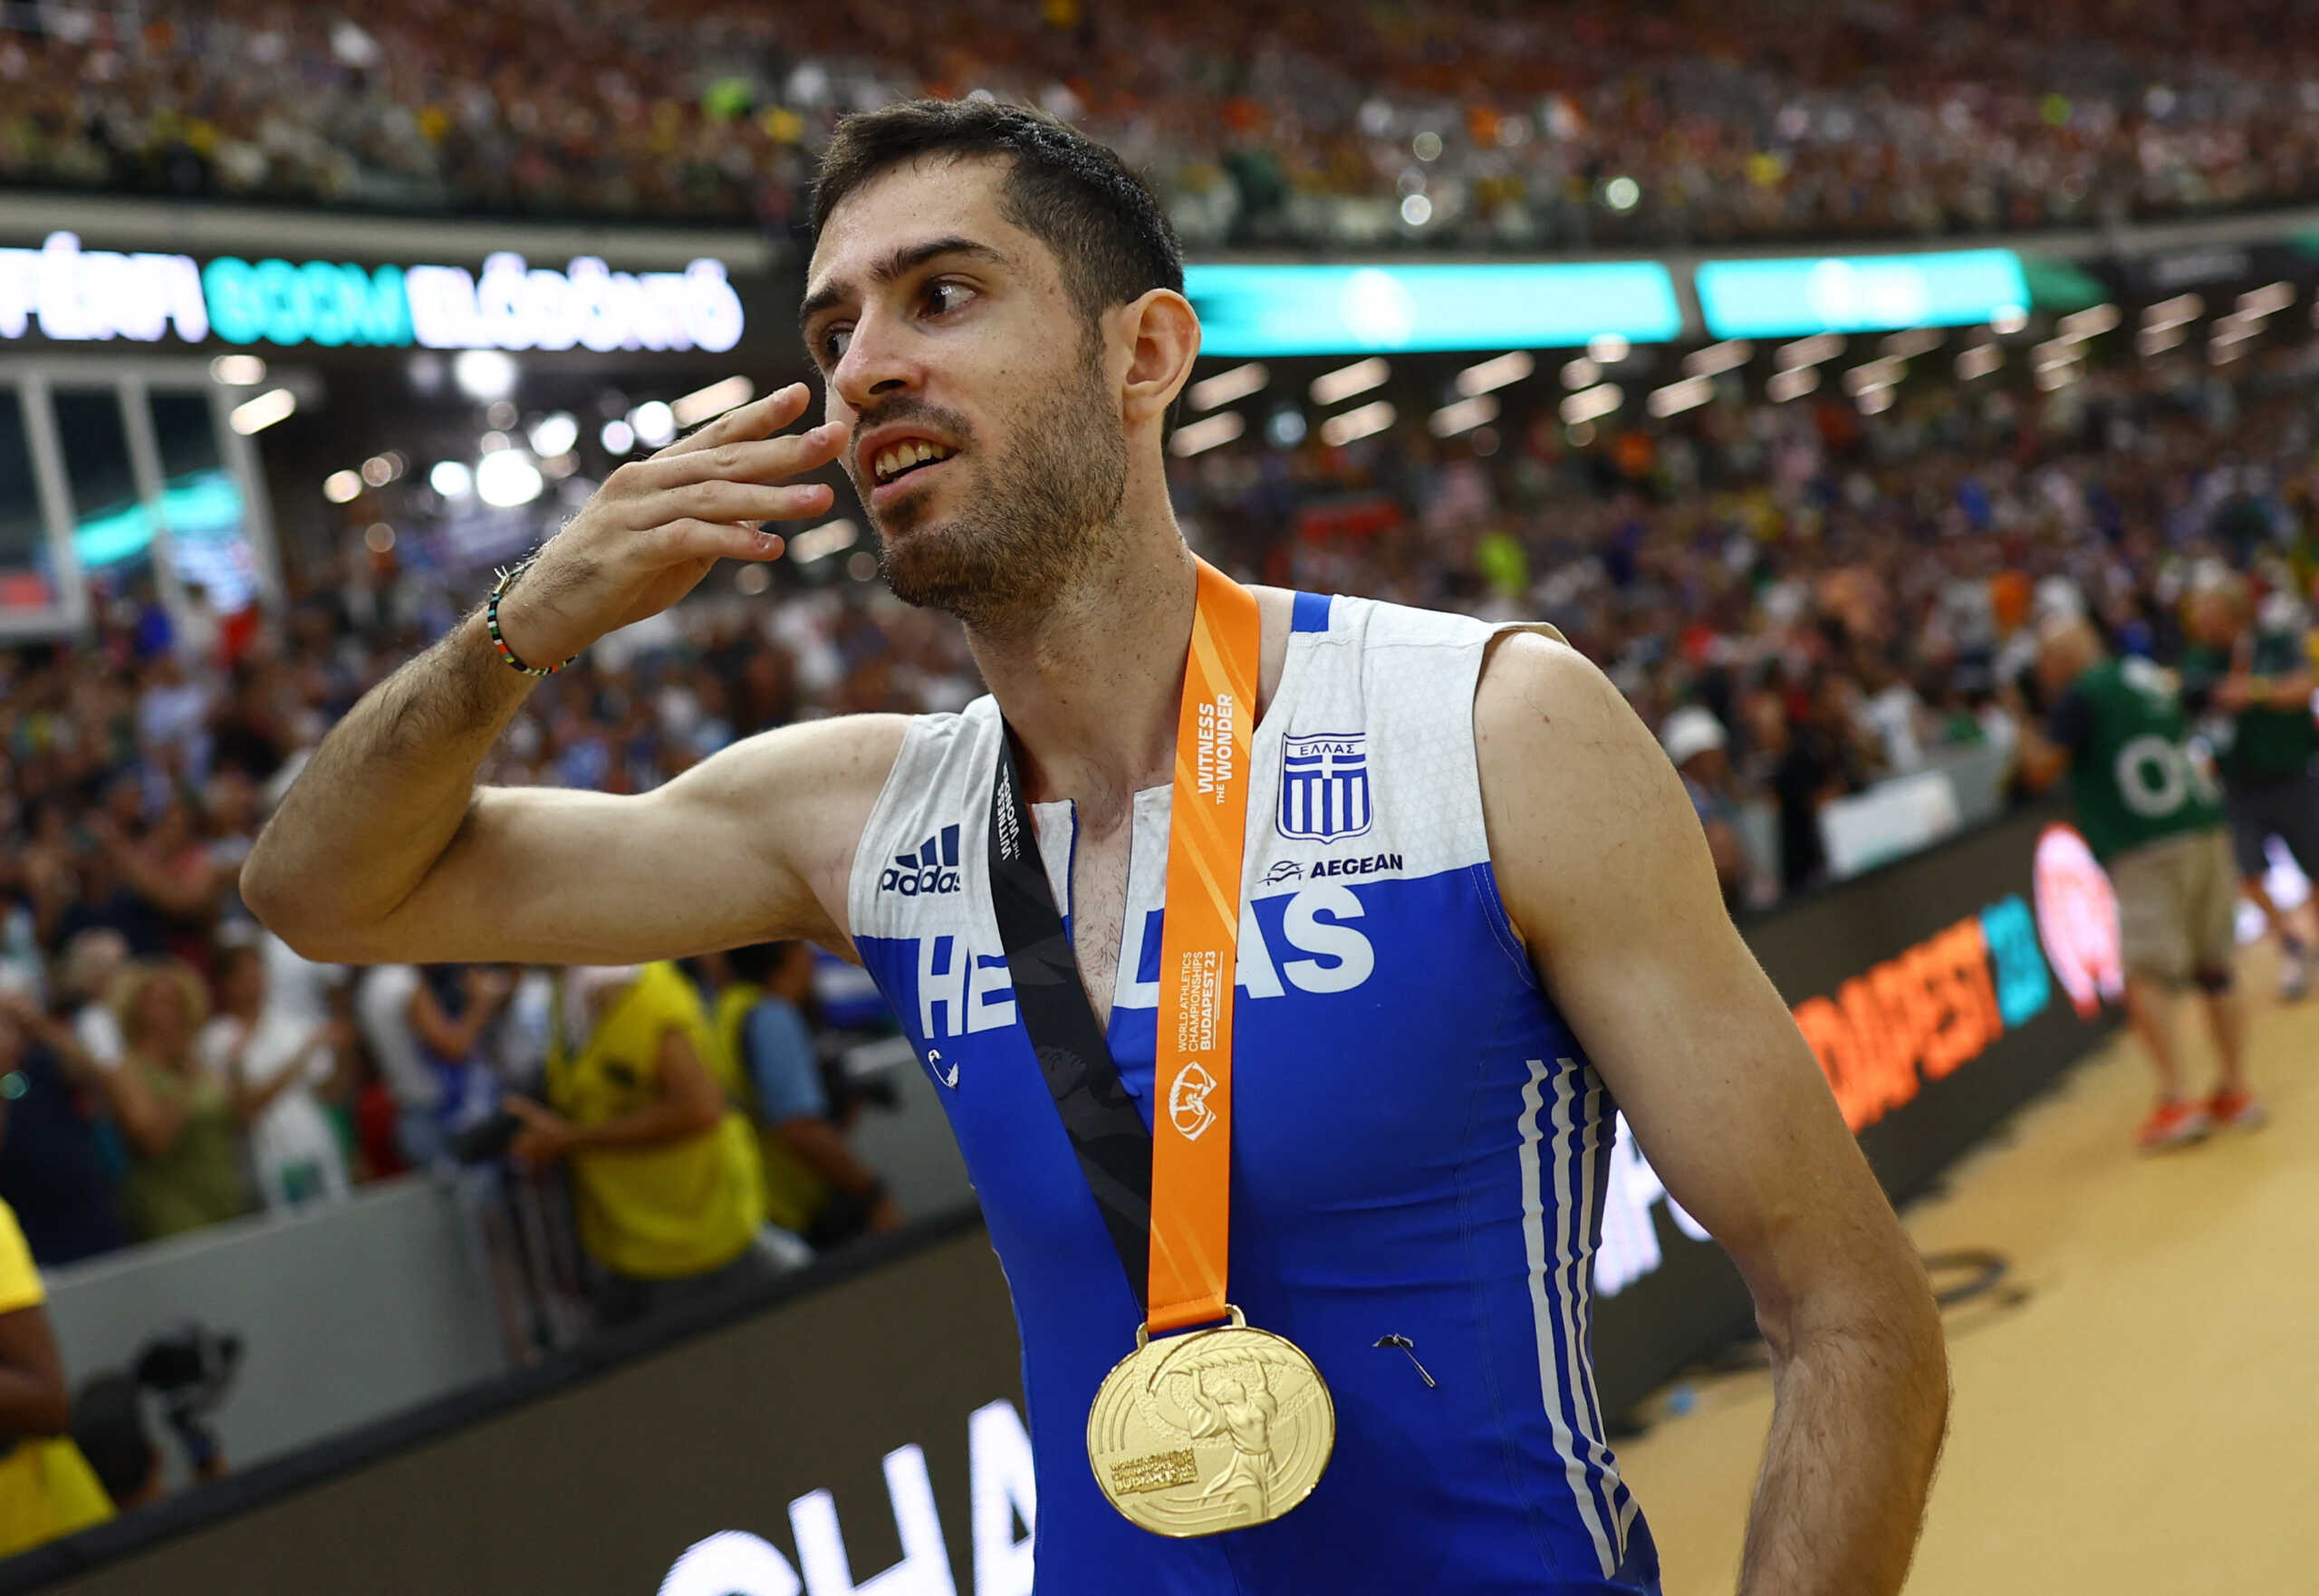 Μίλτος Τεντόγλου: Το συγκλονιστικό φινάλε και η παγκόσμια στέψη του Έλληνα πρωταθλητή